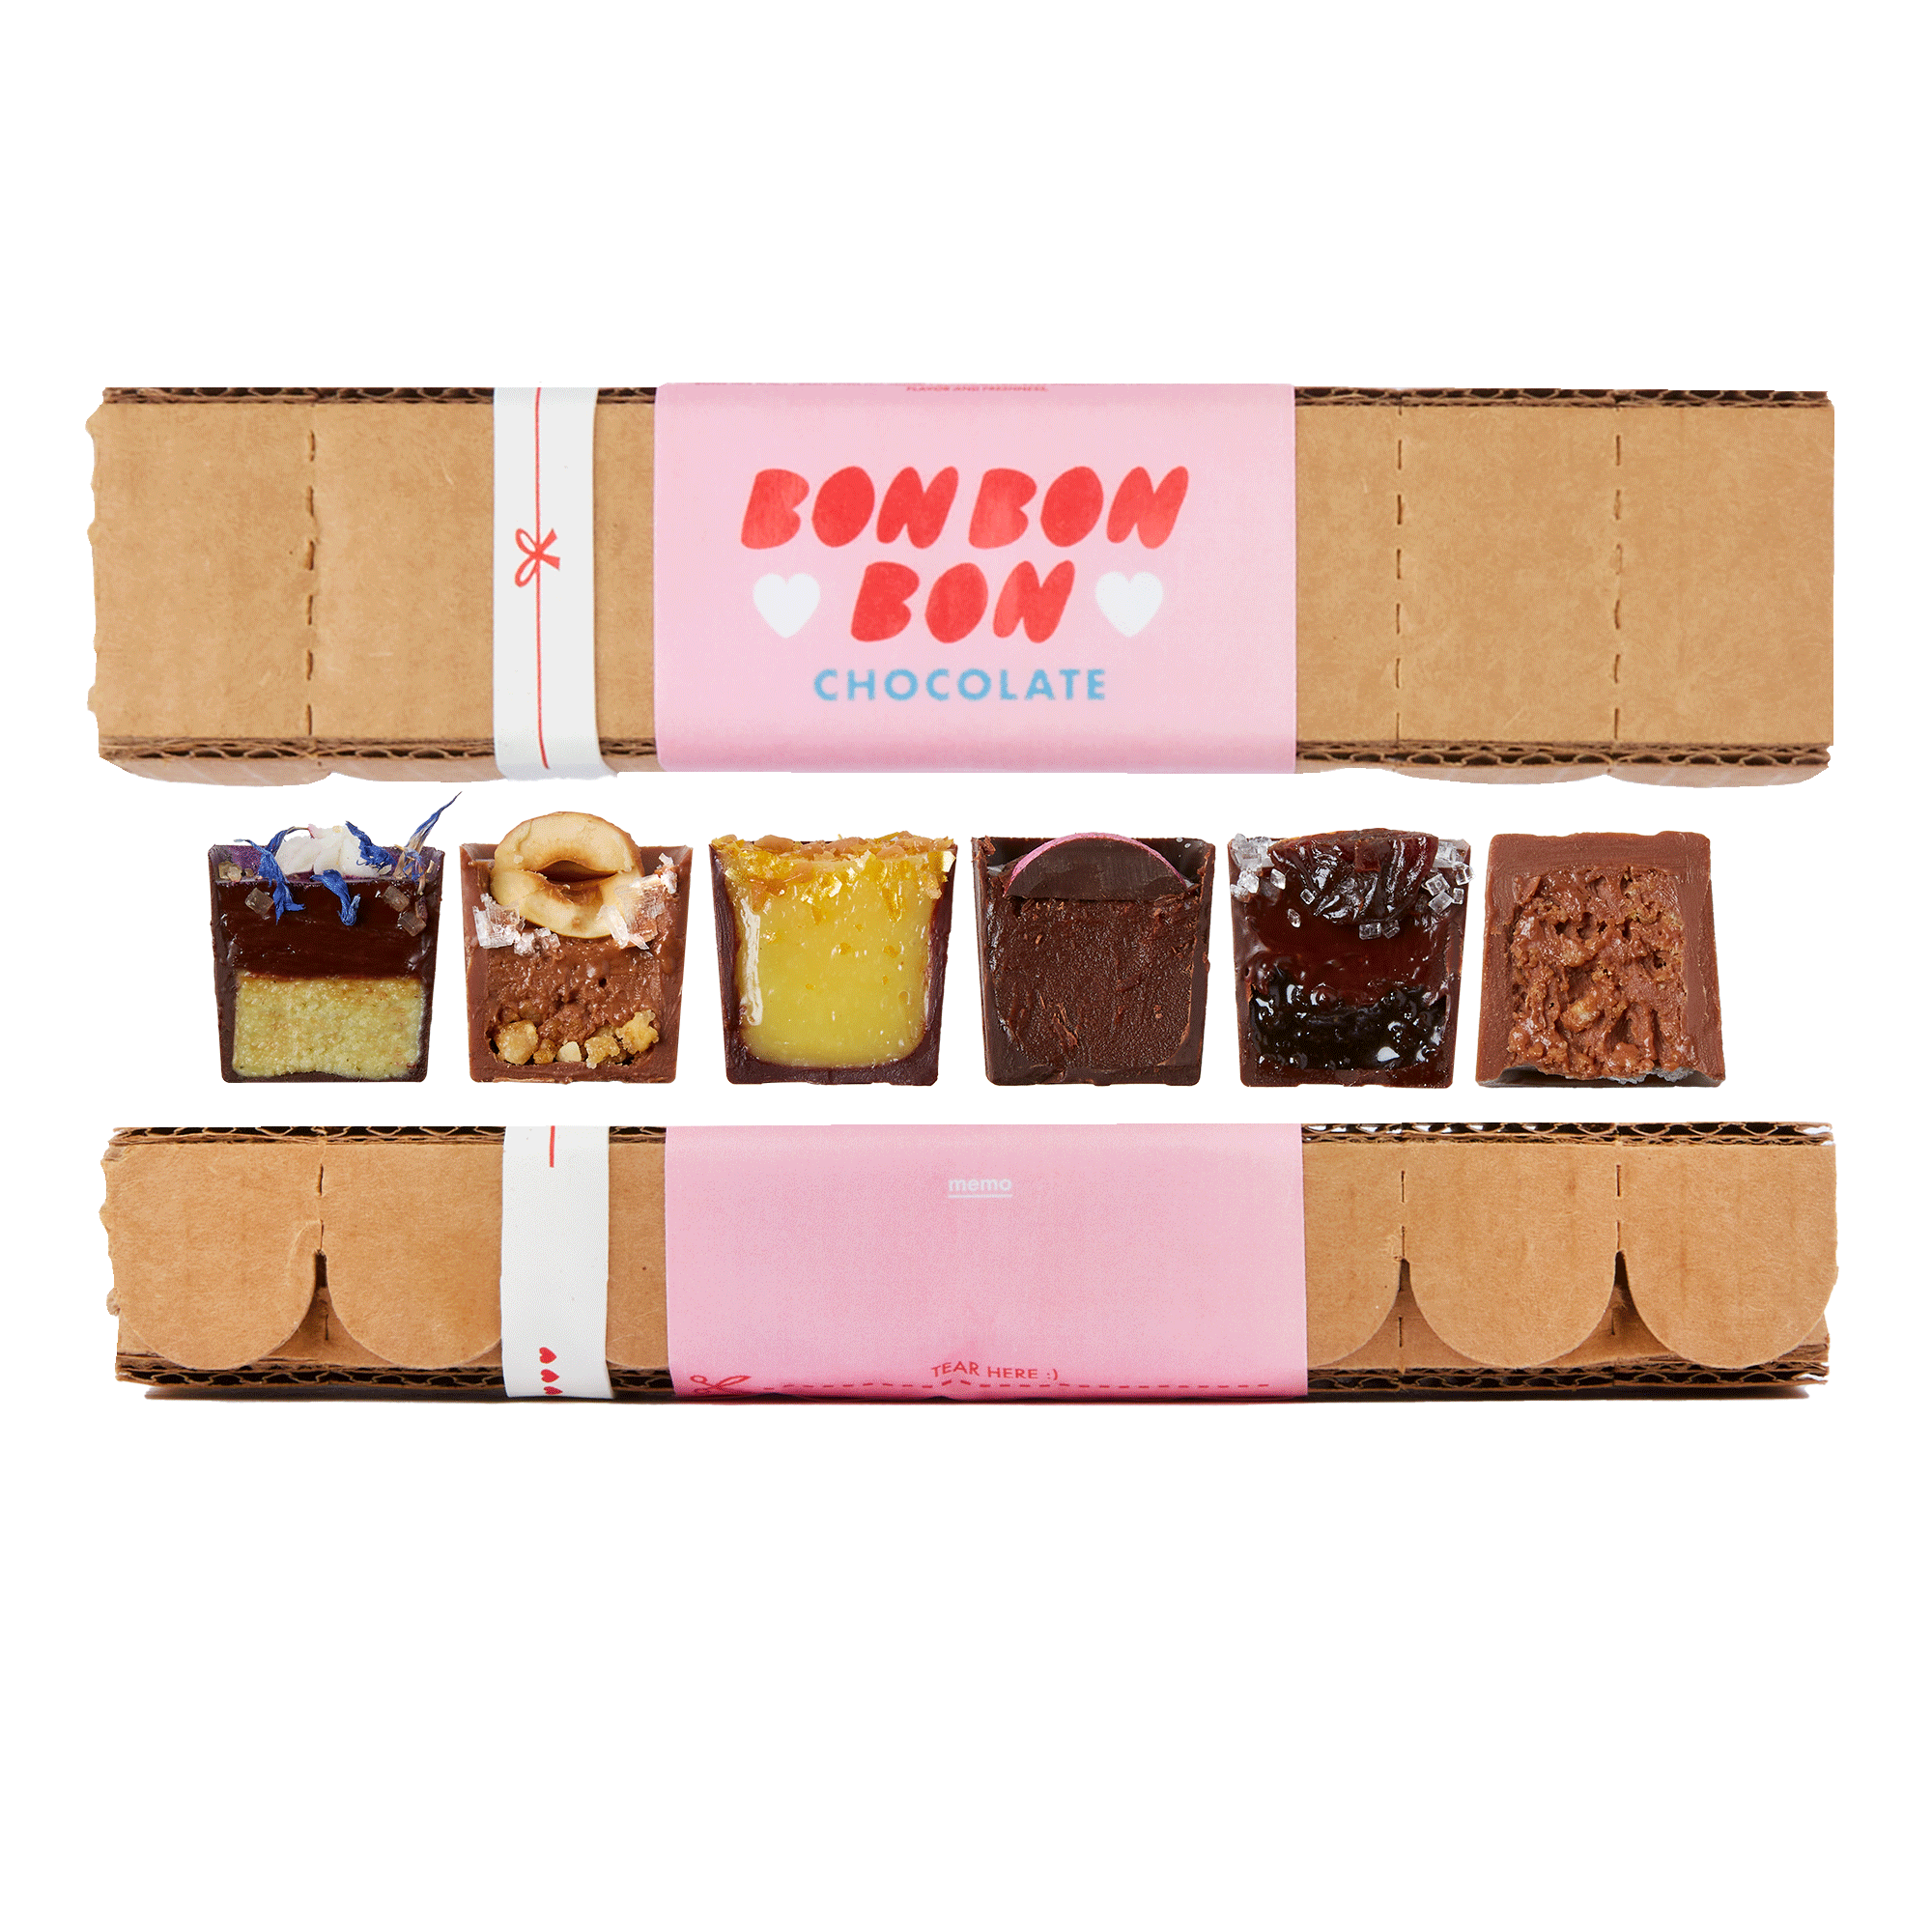 Avoids Gluten Box of Bons